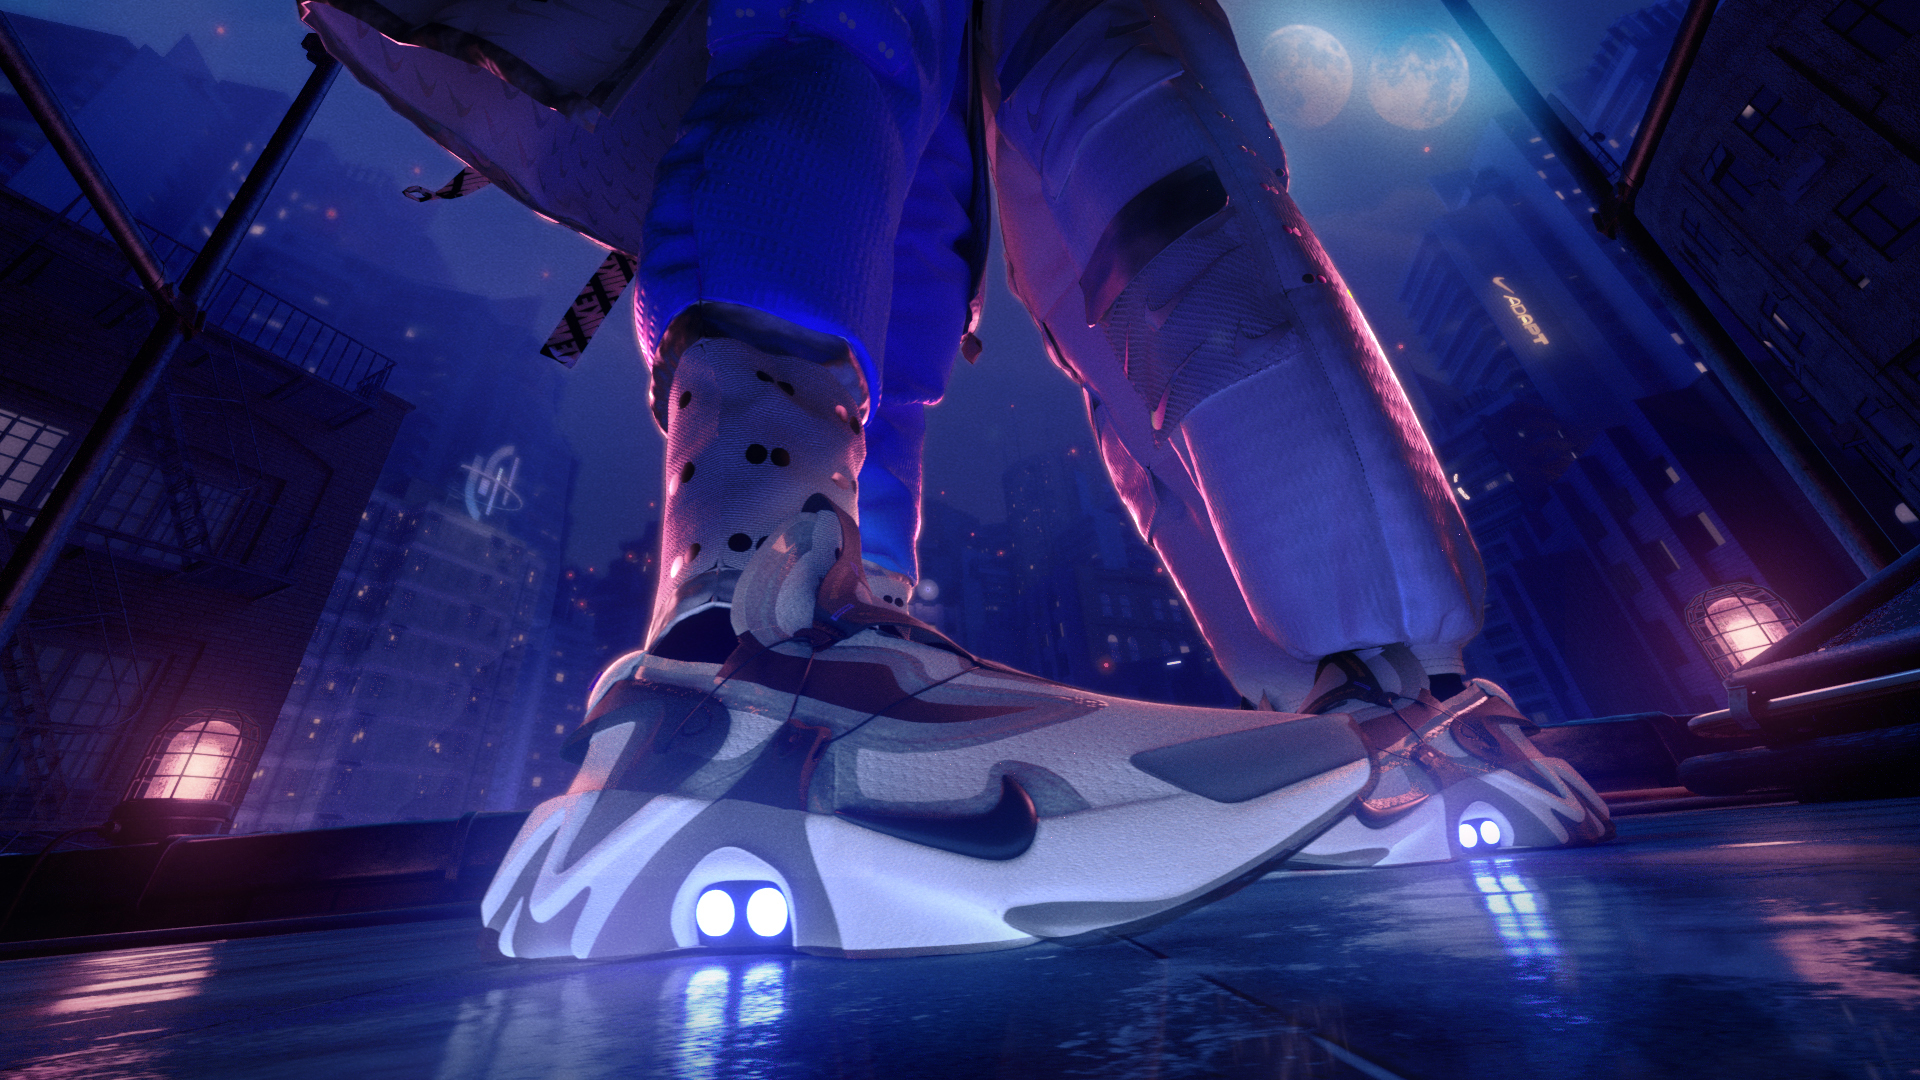 Le futur de la chaussure selon Nike : une basket connectée, auto-laçante  et à recharger - Numerama